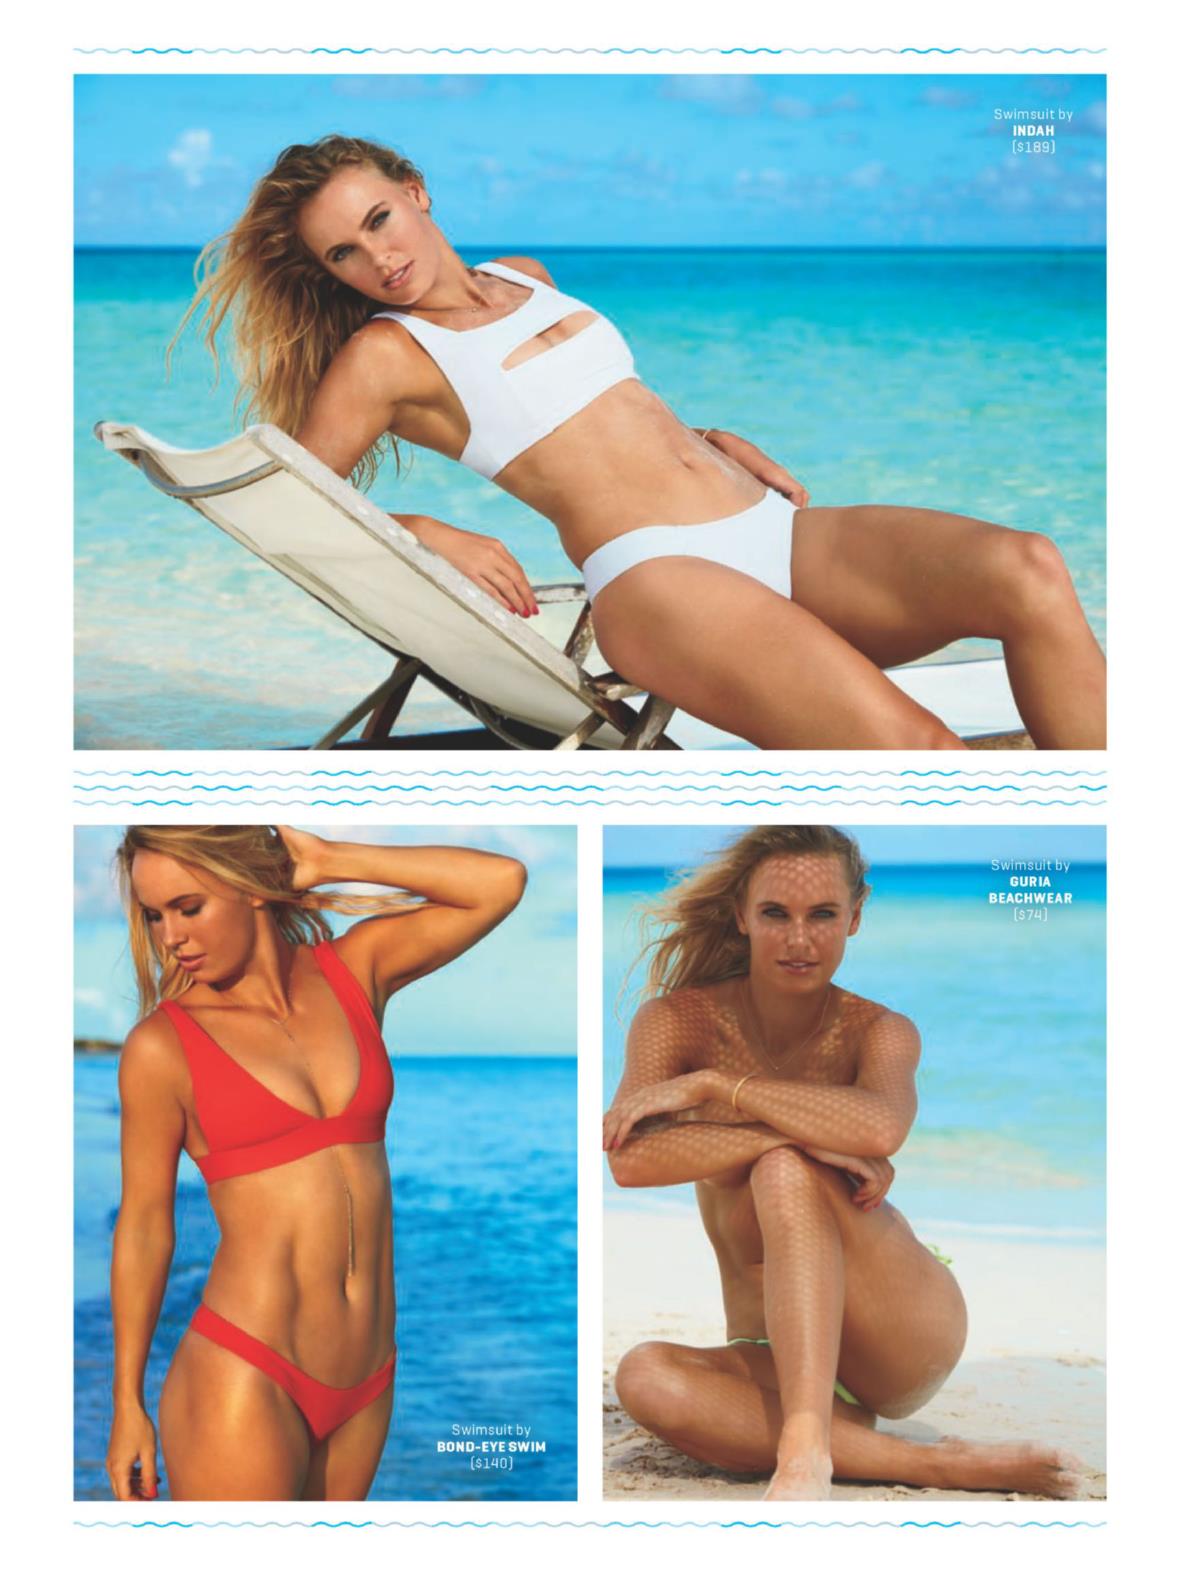 Caroline wozniacki swimsuit issue shoot